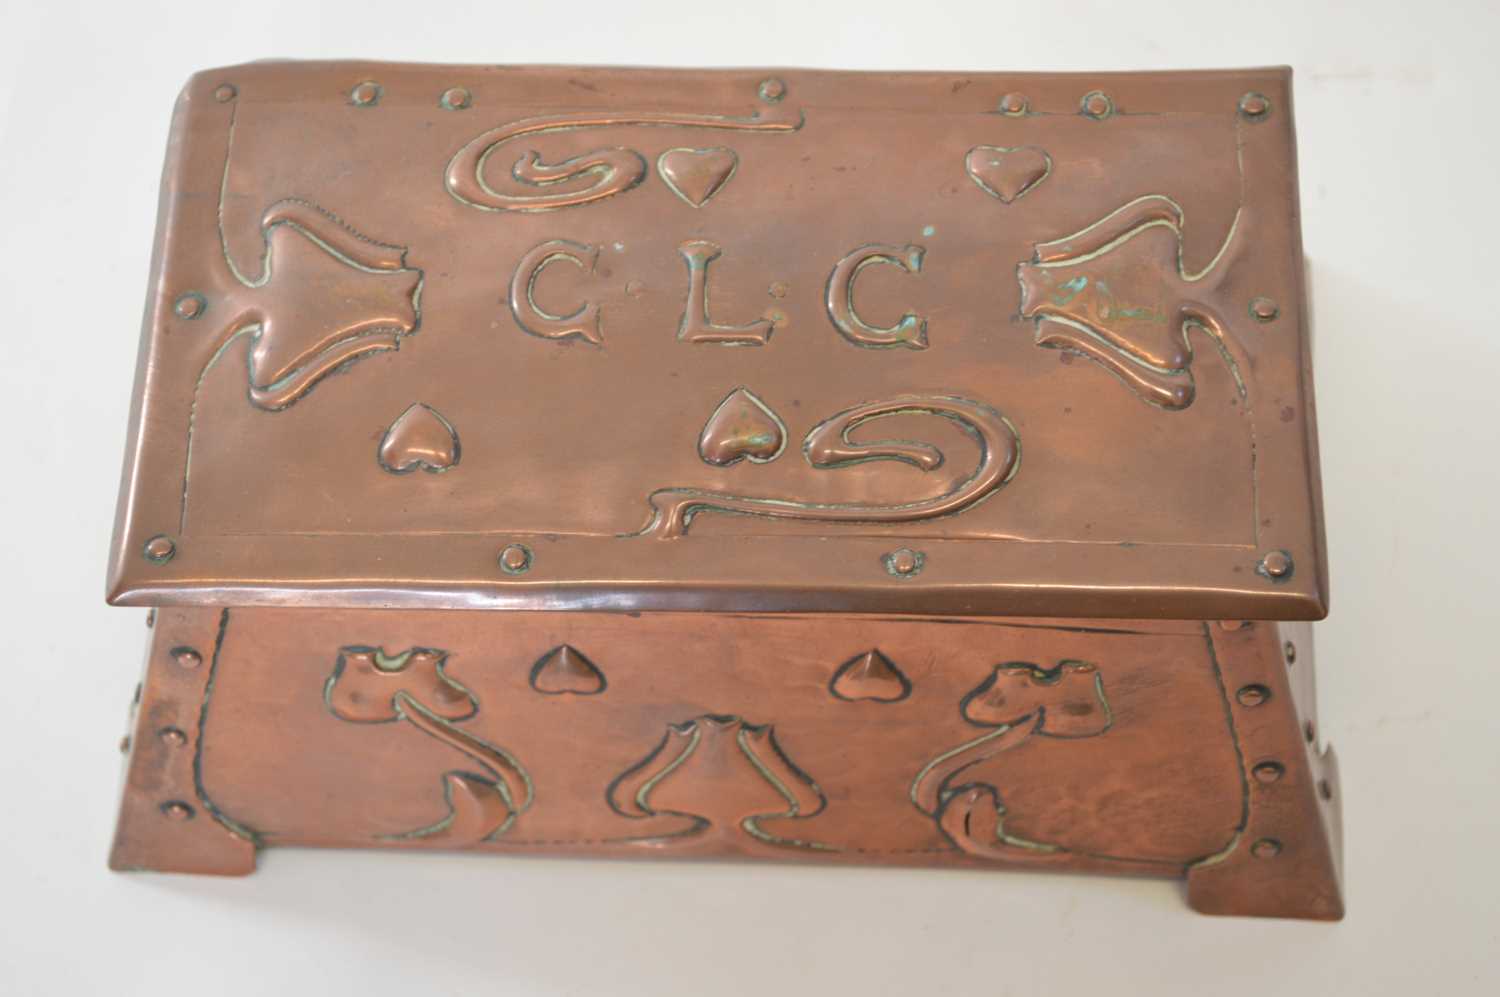 Arts & Crafts Hammered Copper Casket - Image 2 of 4